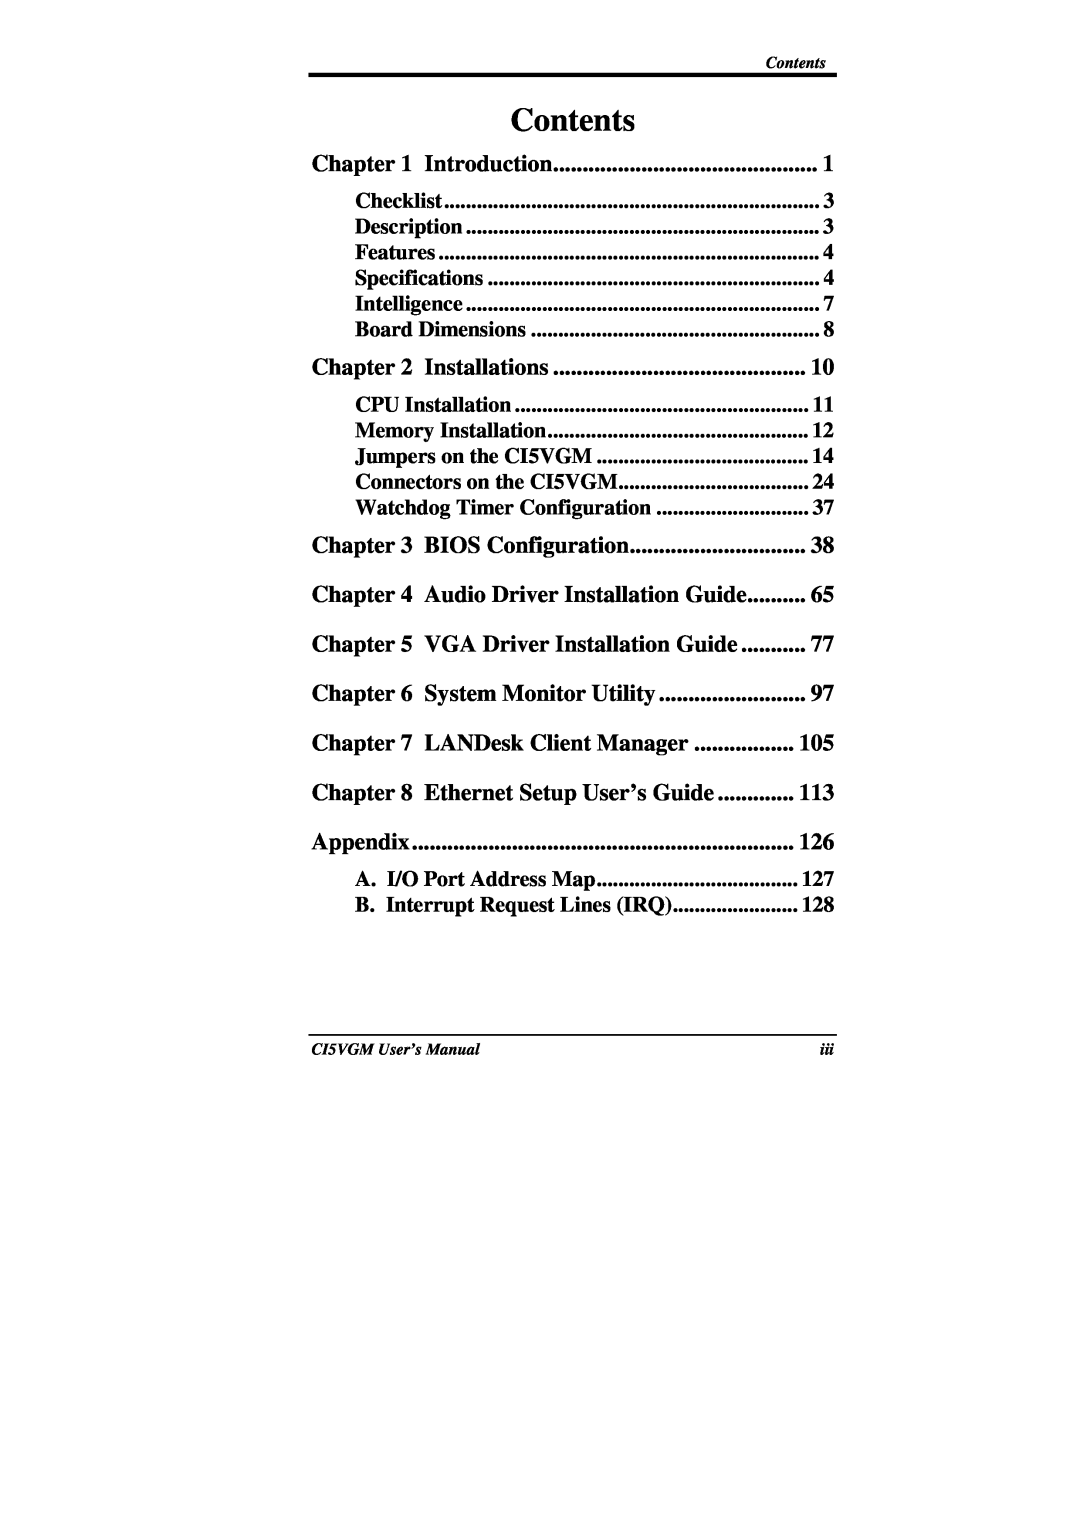 IBM CI5VGM Series user manual Contents, Appendix 